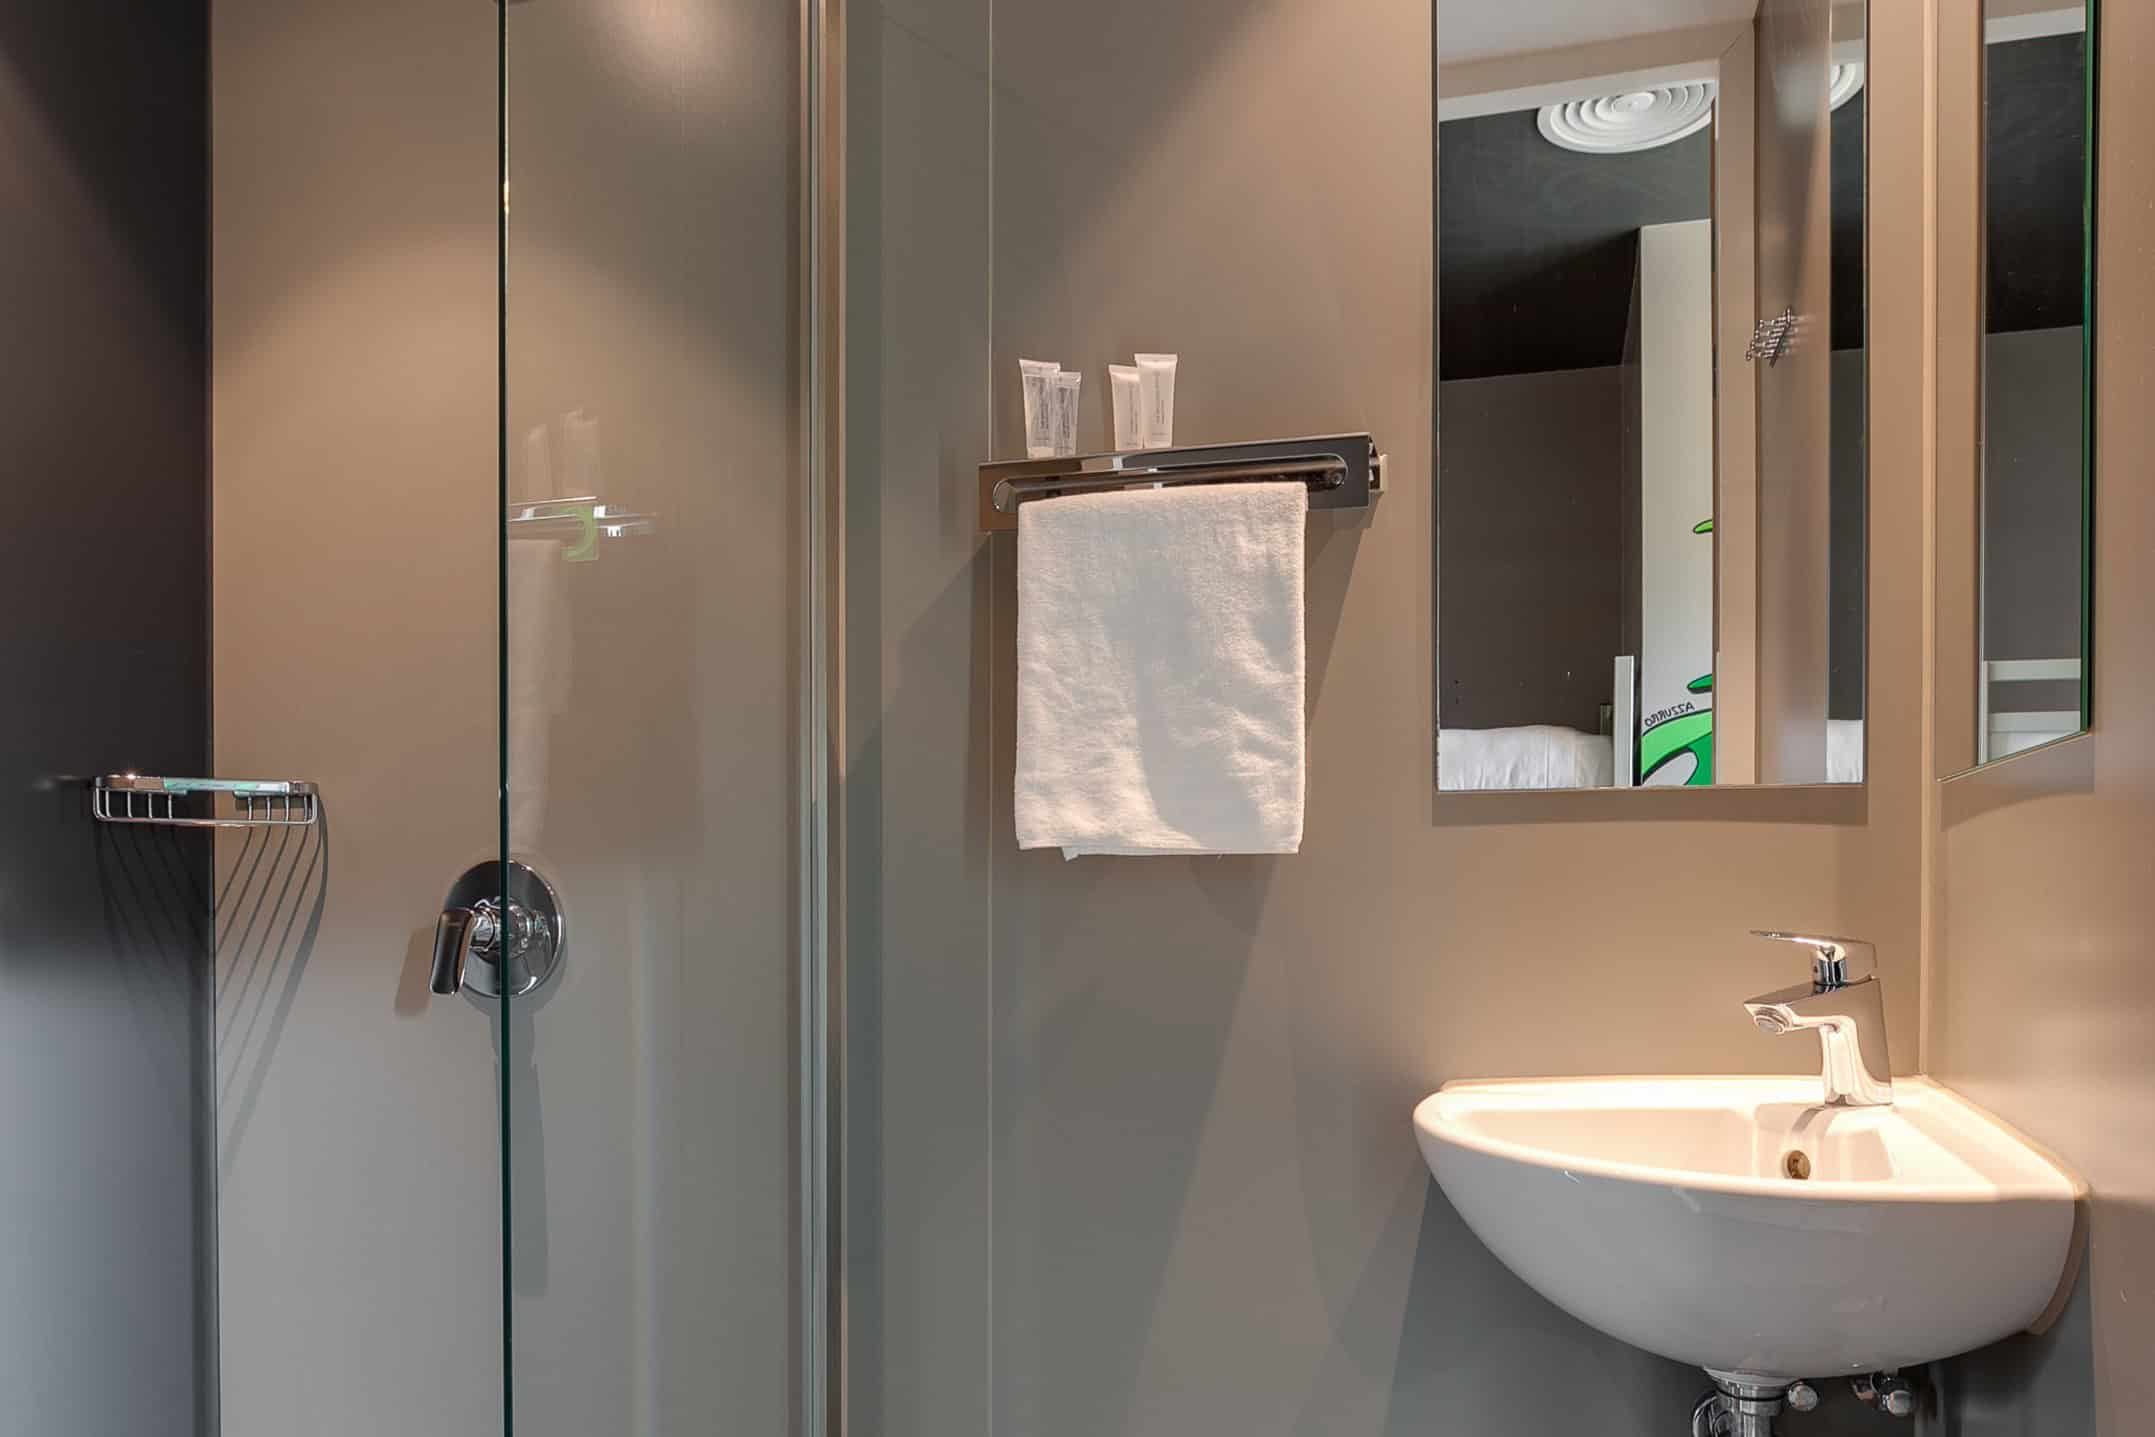 Private room en-suite bathroom at Clinknoord hostel Amsterdam